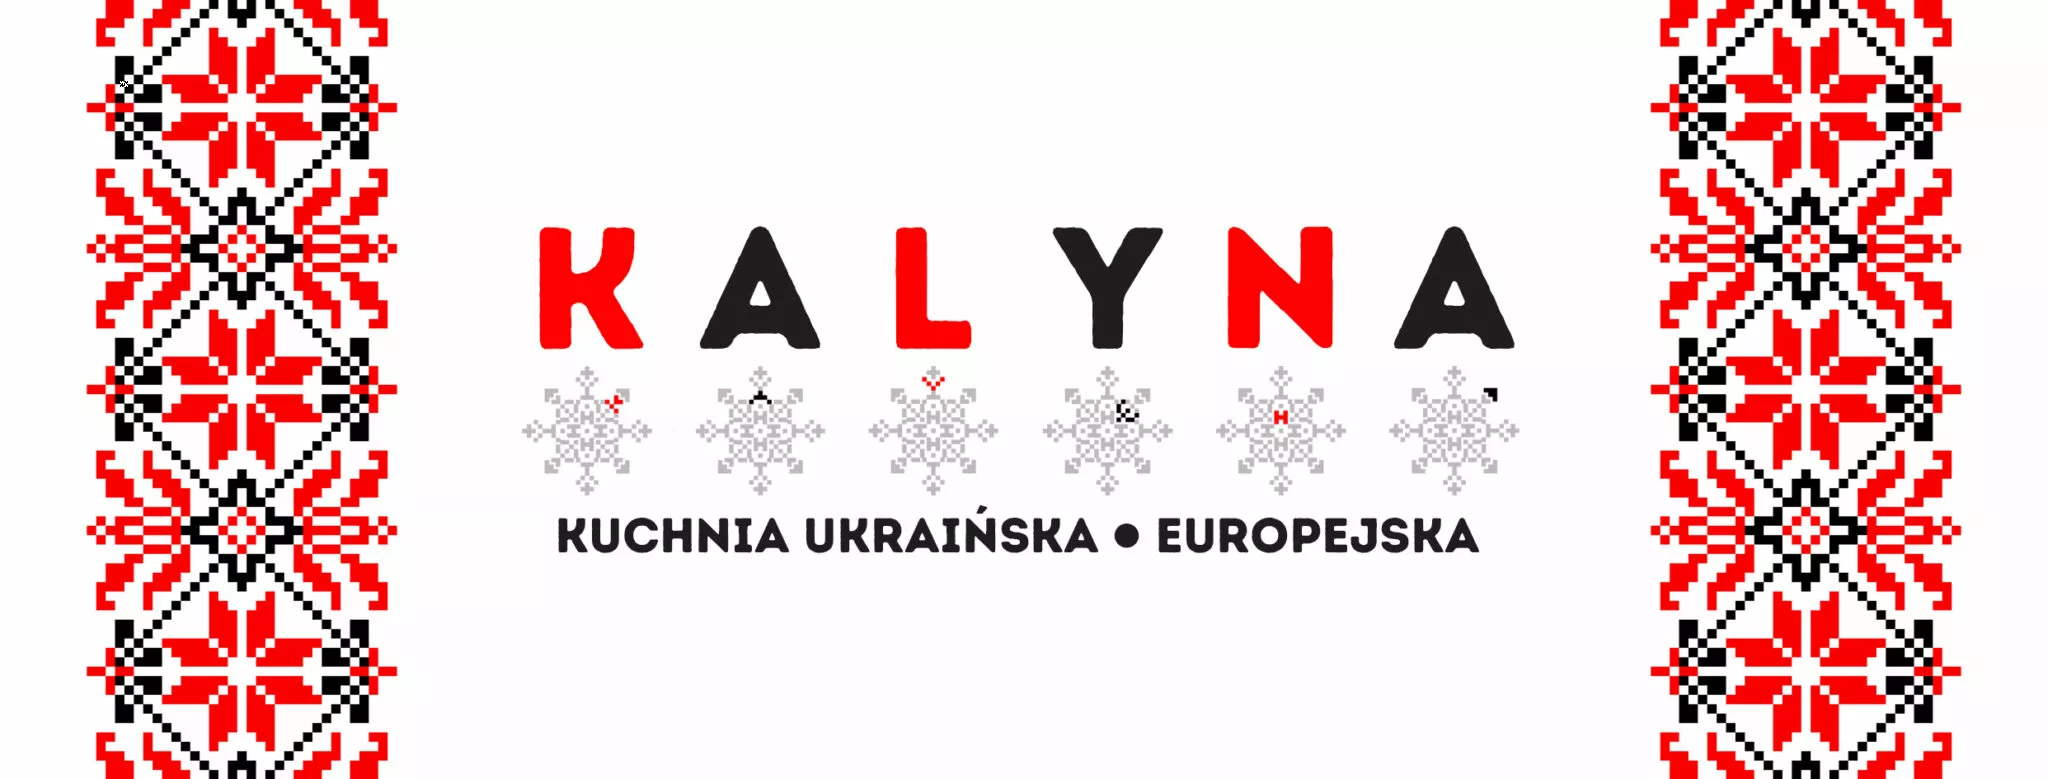 Ukraińcy otworzyli w Lublinie restaurację »Kalyna«. Polacy oburzeni!